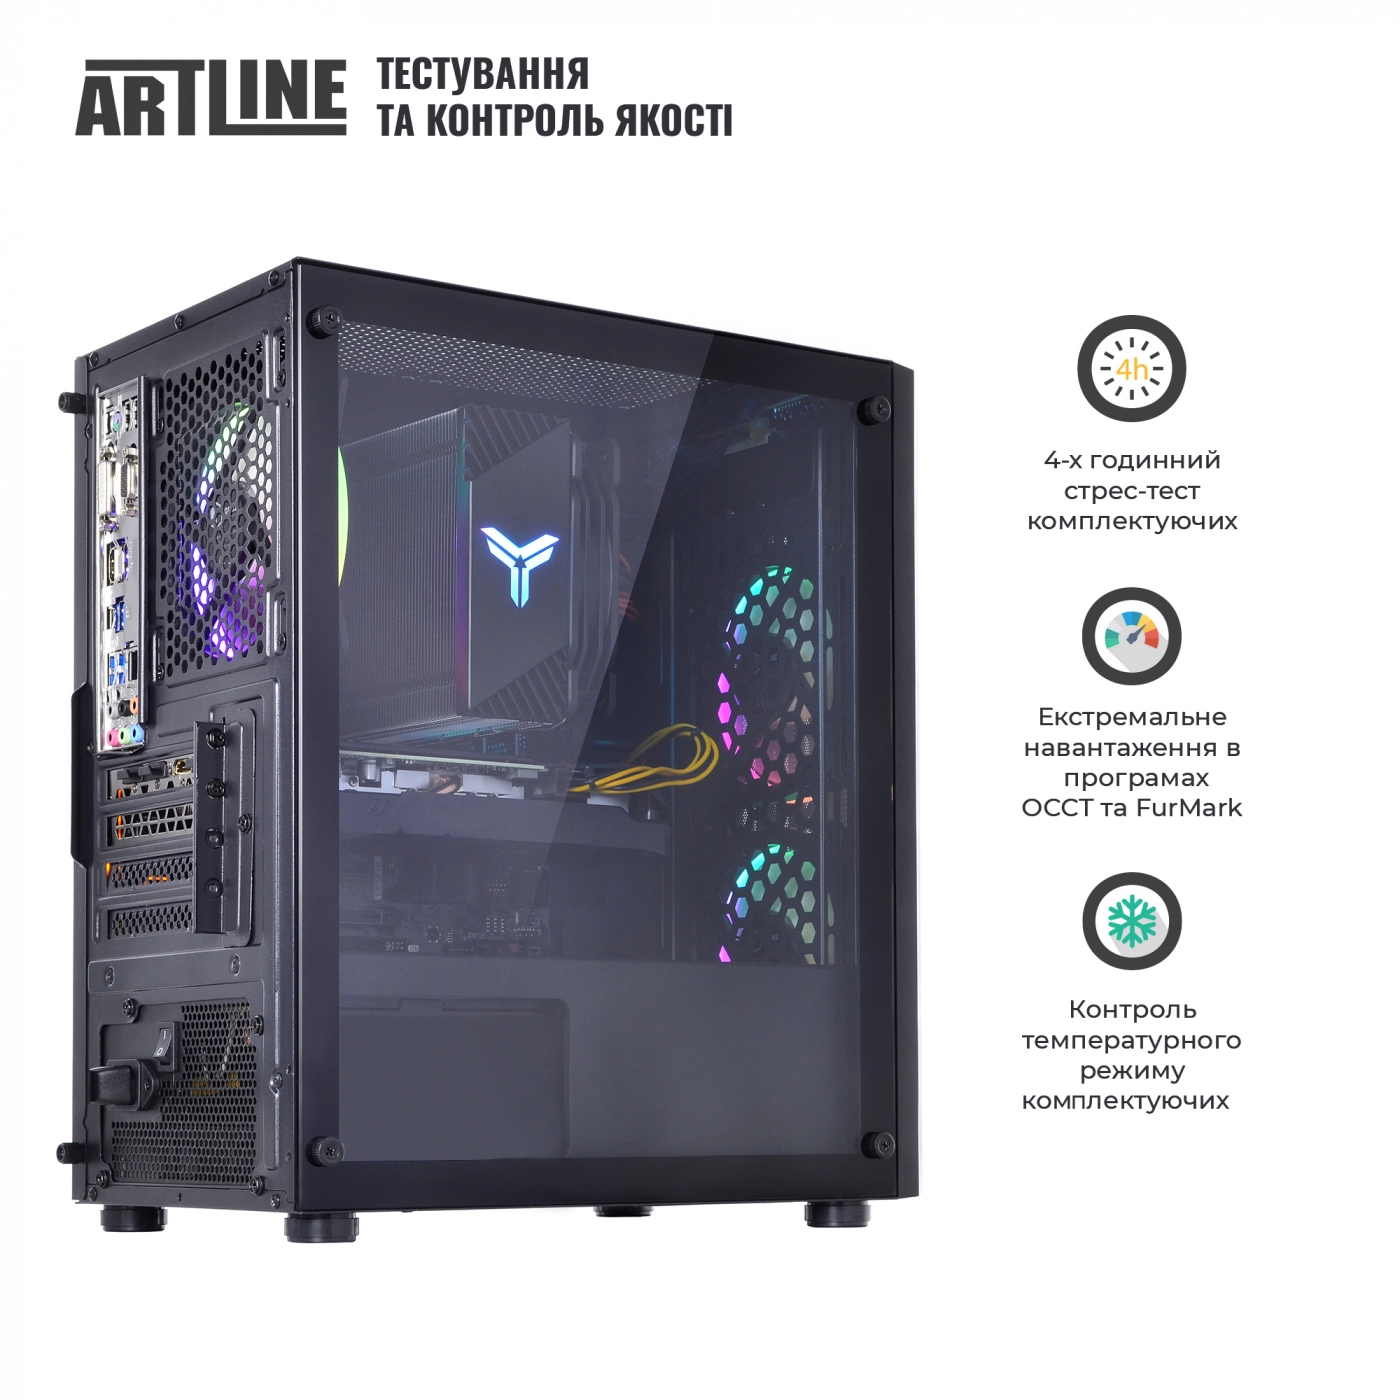 Купить Компьютер ARTLINE Gaming X71v65 - фото 9